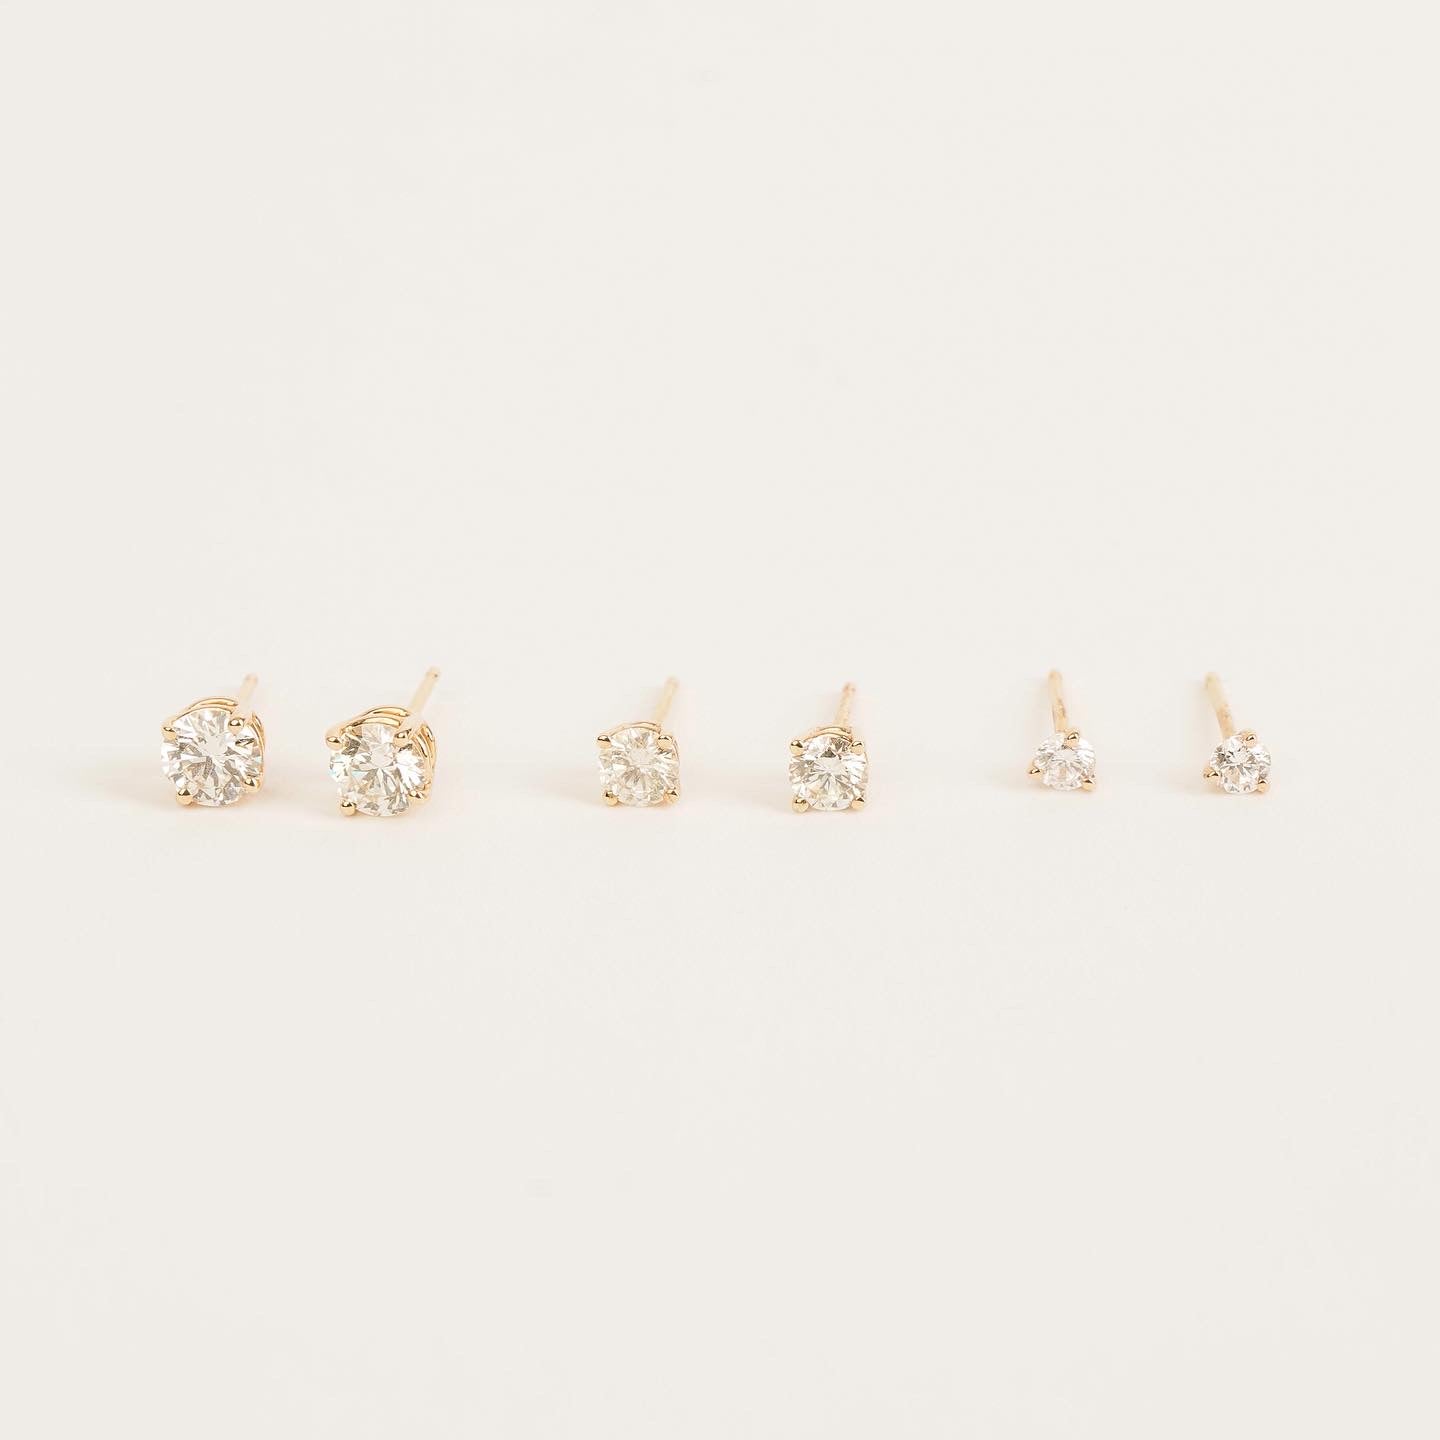 Petite Martini Diamond Stud Earrings